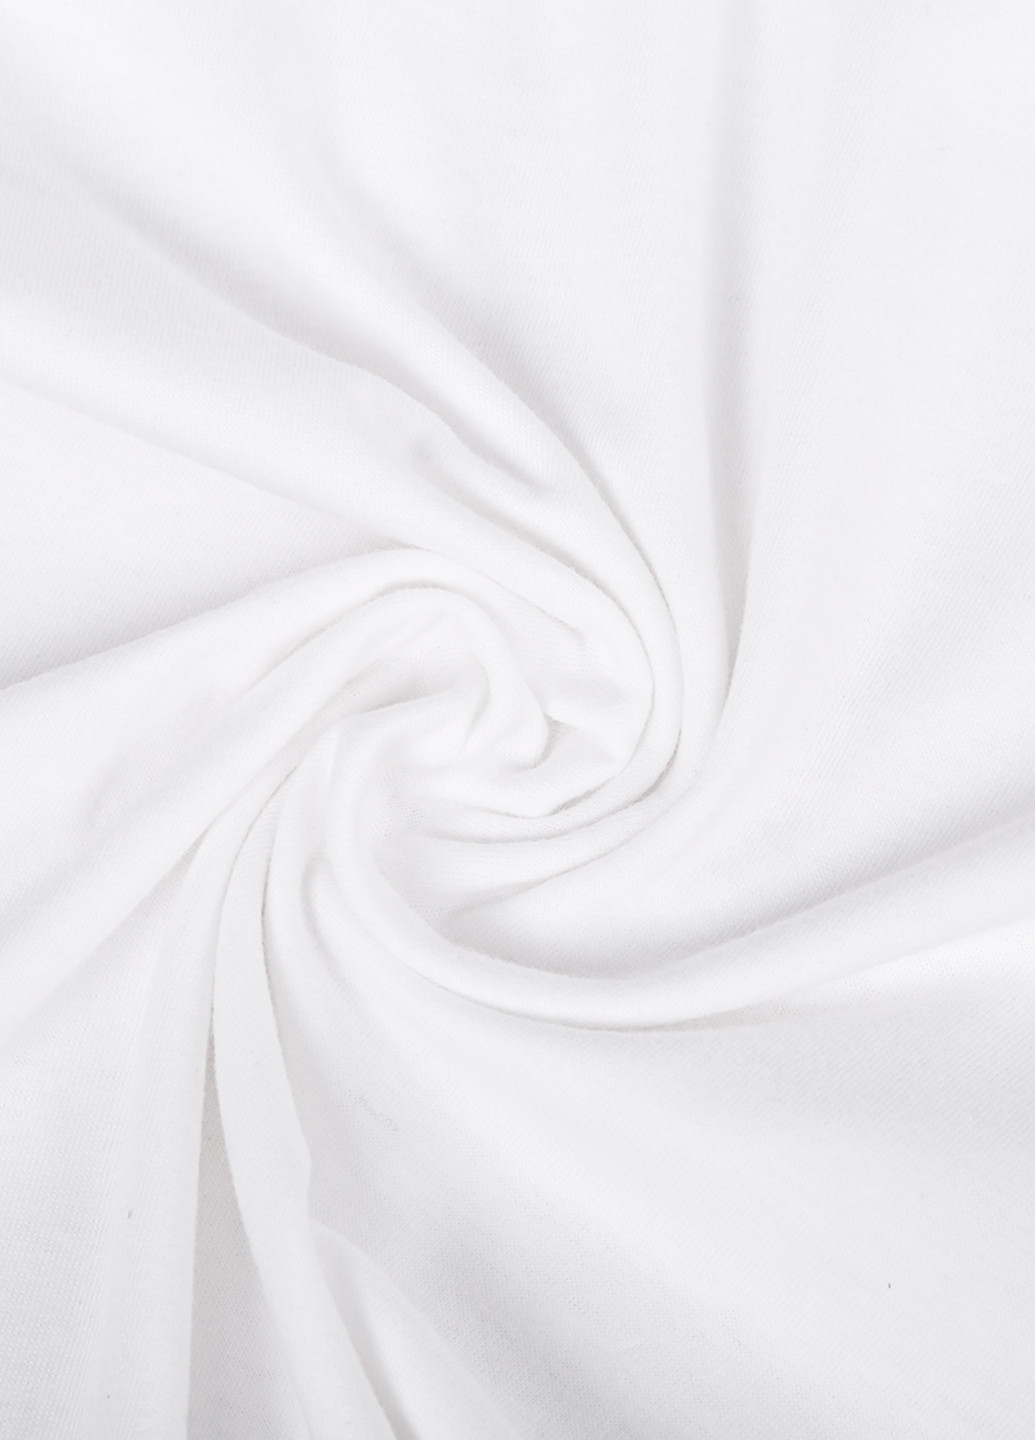 Белая демисезон футболка женская плейлист шальная императрица ирина аллегрова белый (8976-1627) xxl MobiPrint